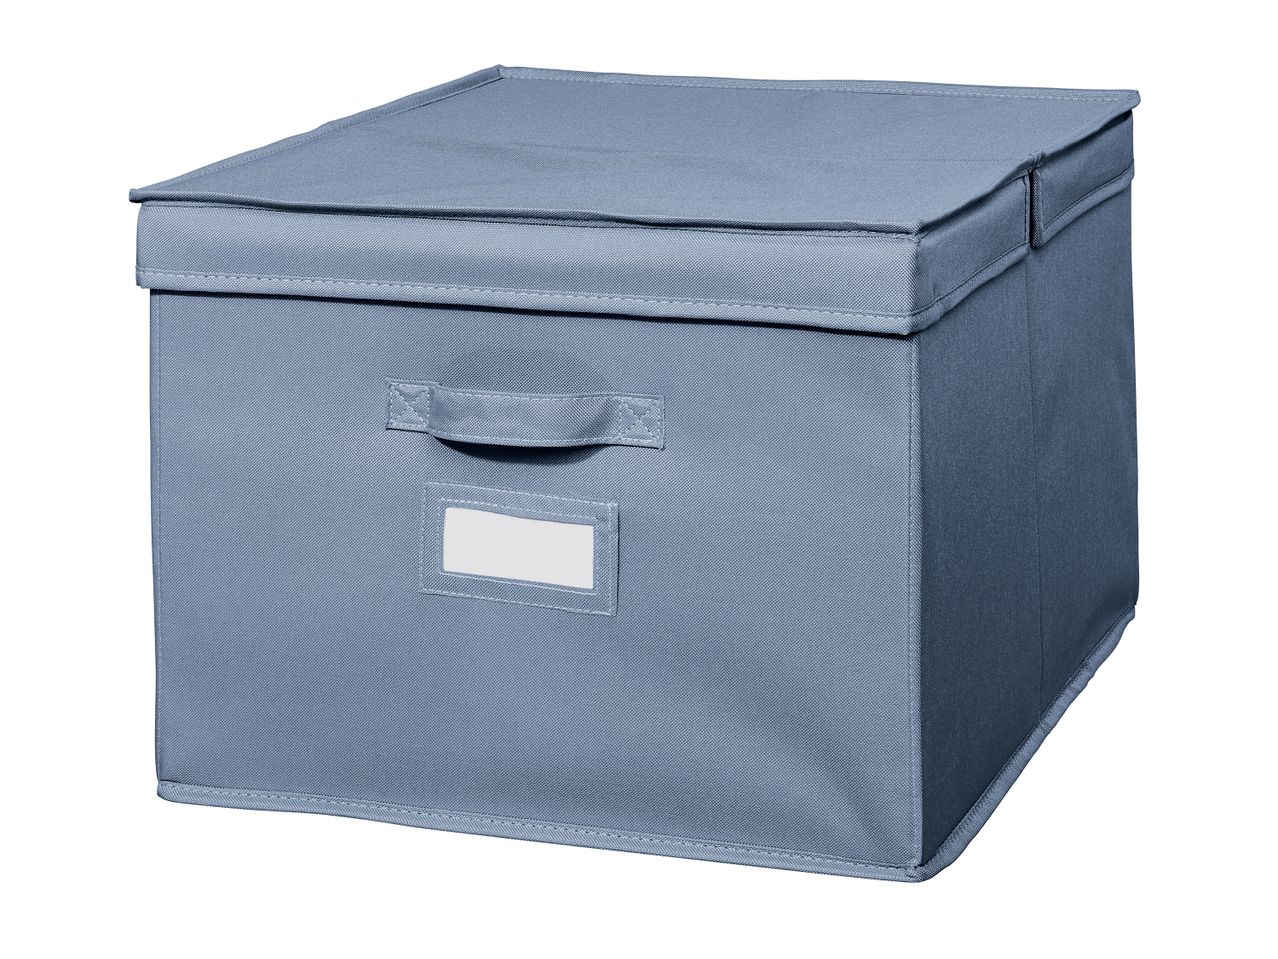 Box portaoggetti o organizer per cassetti , prezzo 11.99 EUR 
Box portaoggetti o ...